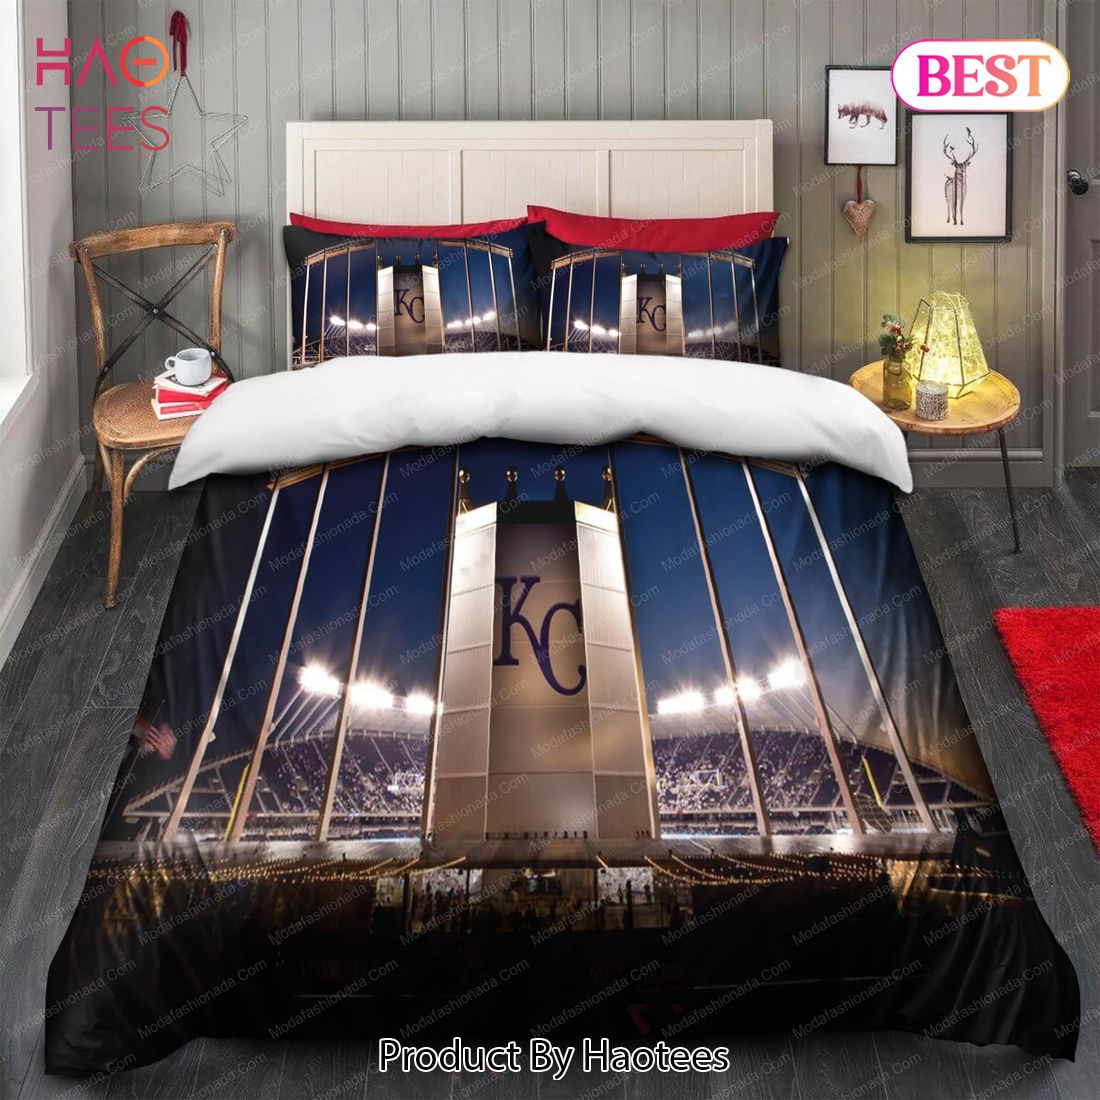 Buy Stadion Kansas City Royals MLB 110 Bedding Sets Bed Sets, Bedroom Sets, Comforter Sets, Duvet Cover, Bedspread